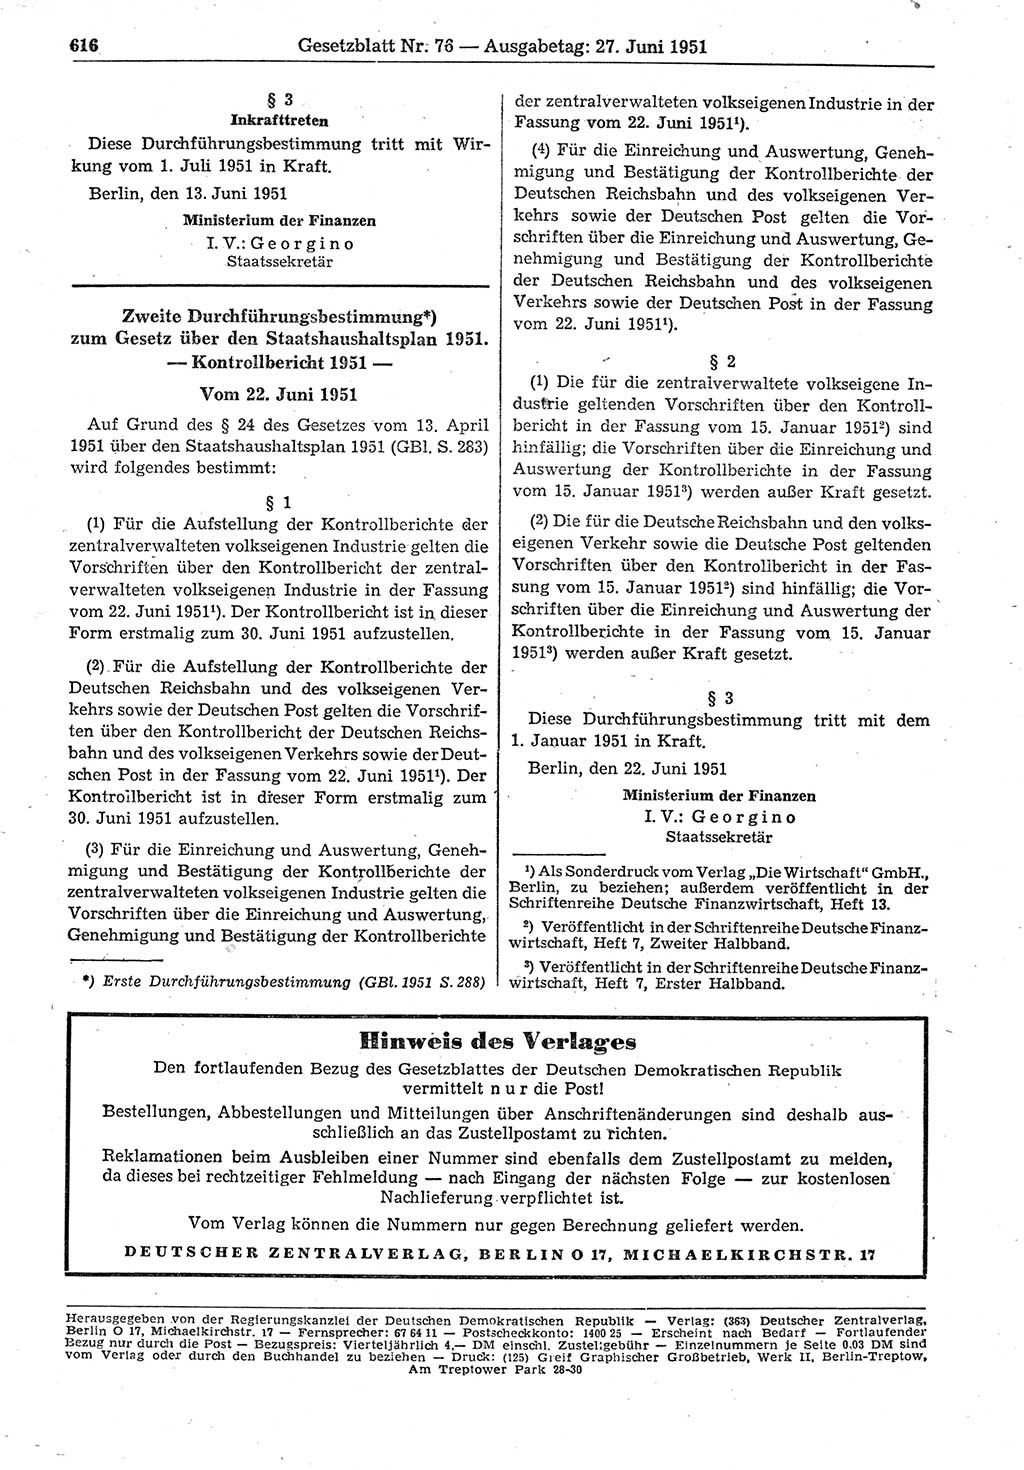 Gesetzblatt (GBl.) der Deutschen Demokratischen Republik (DDR) 1951, Seite 616 (GBl. DDR 1951, S. 616)